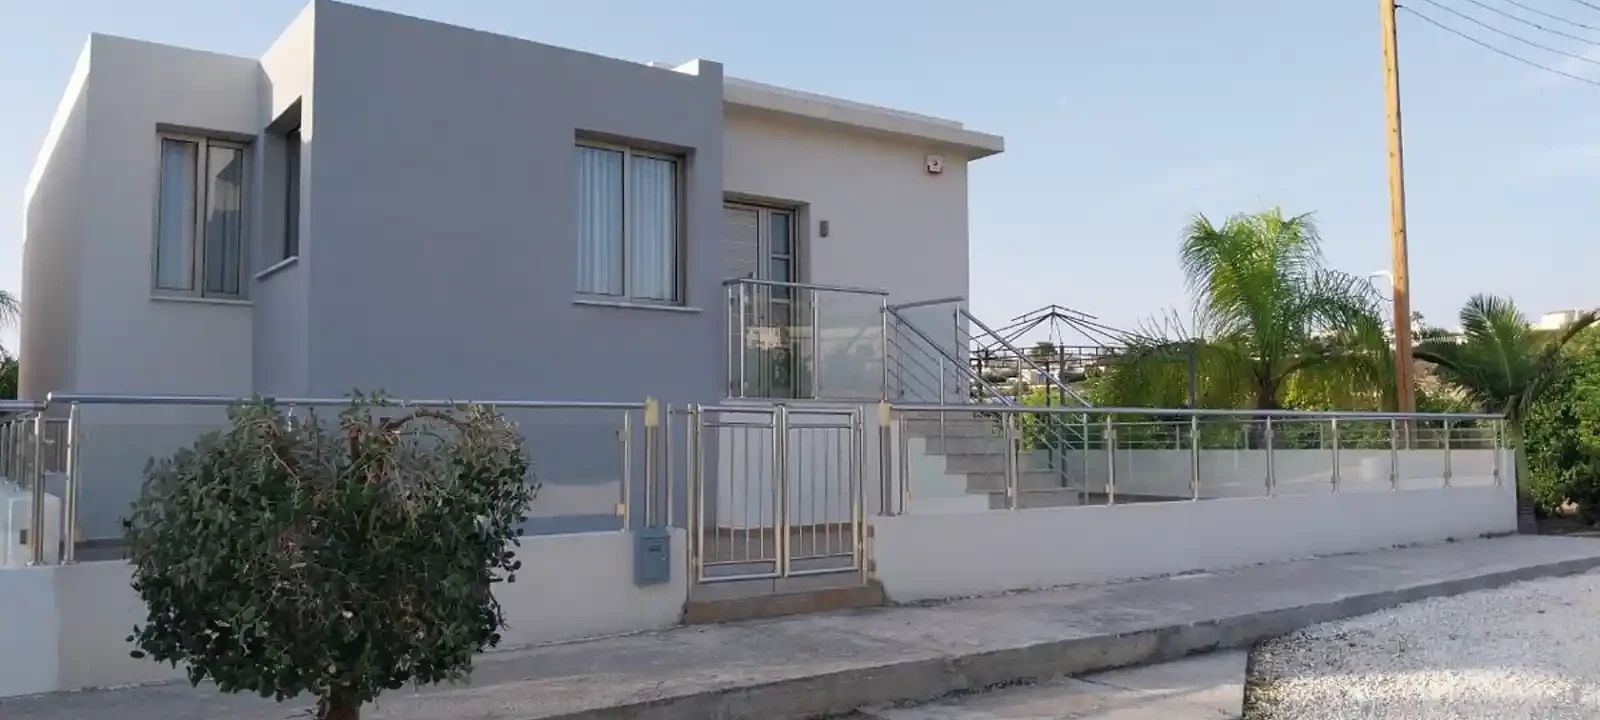 4-bedroom villa to rent €2.000, image 1